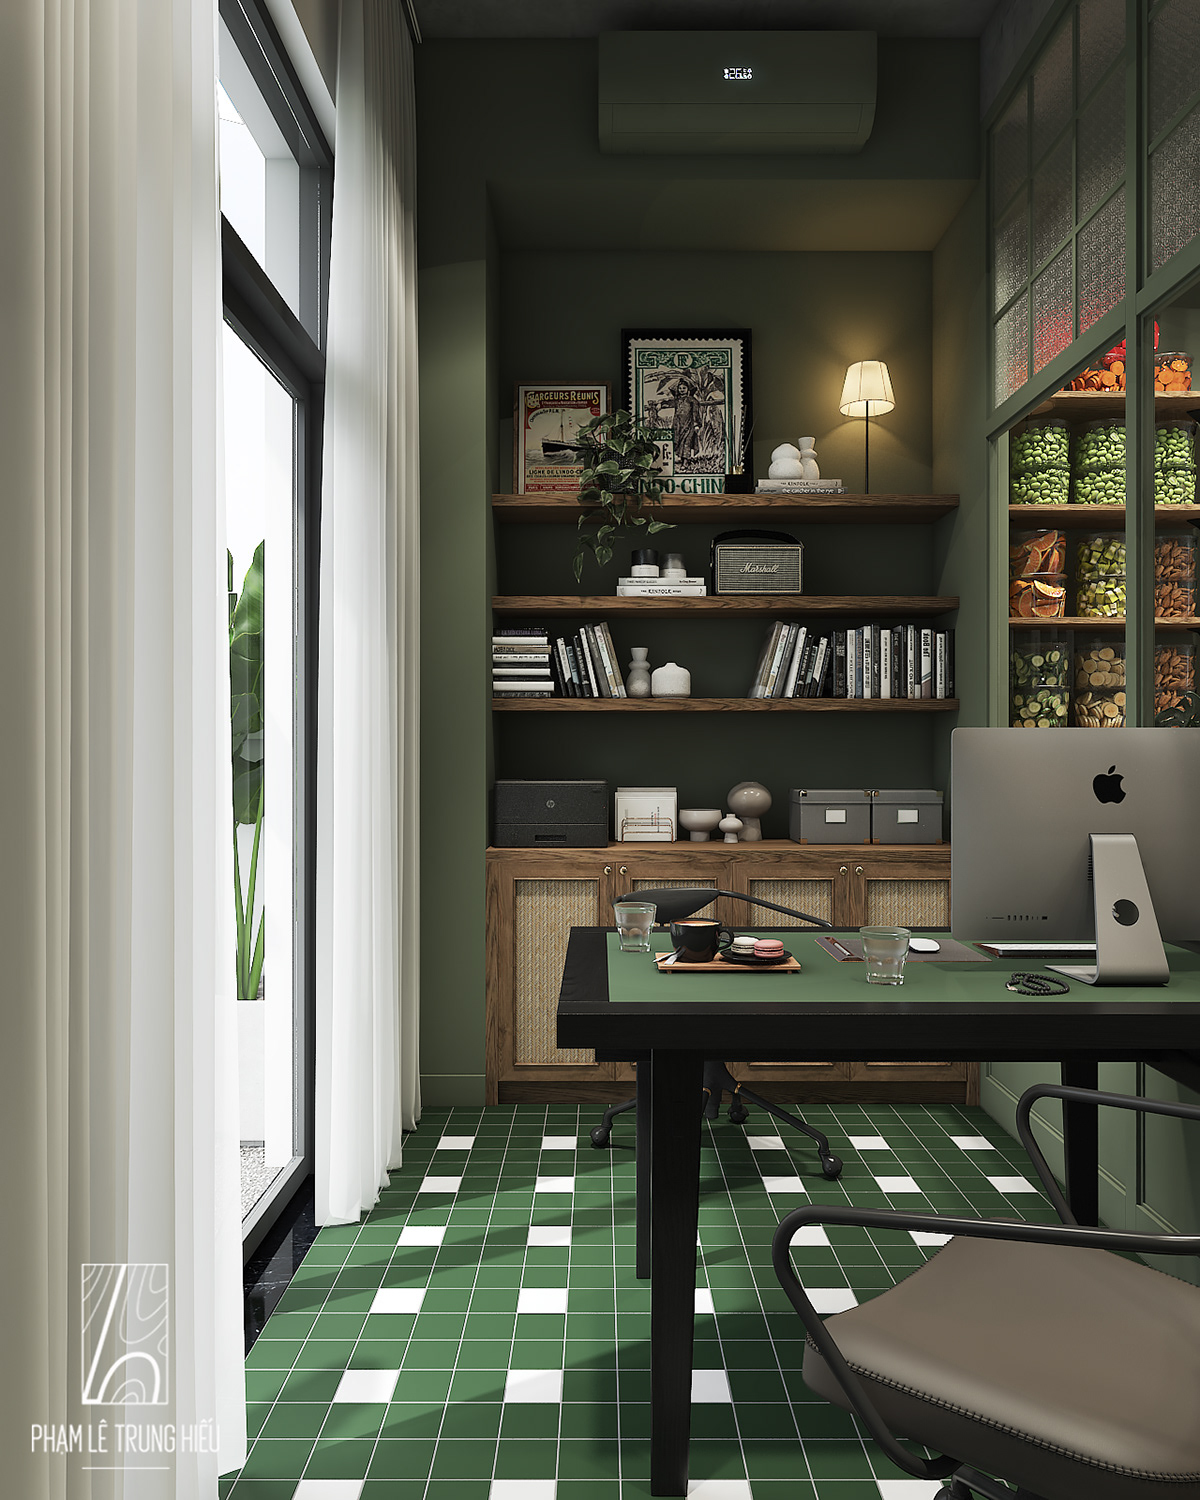 cafe cochinchine Coffee decor inspiration instagram Interior interior design  phamletrunghieu restaurant